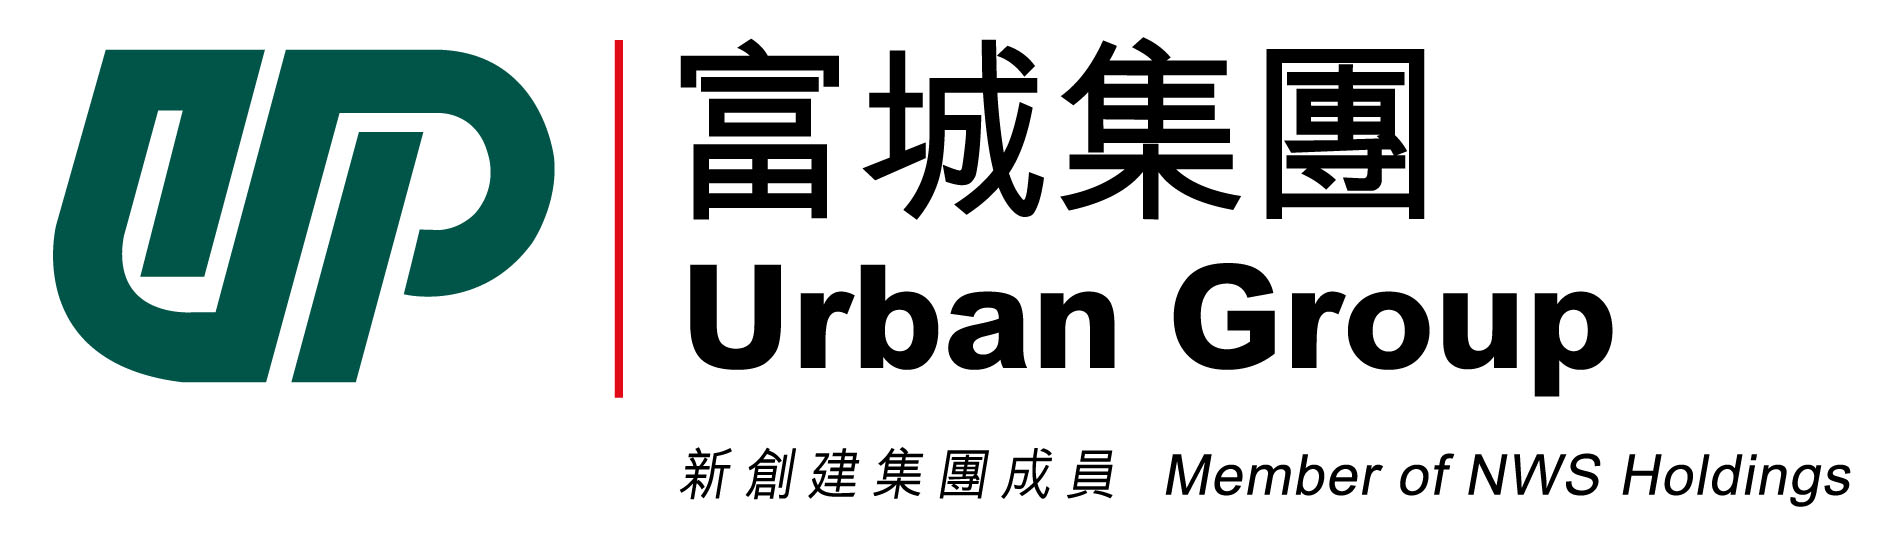 UrbanNew-ci-logo